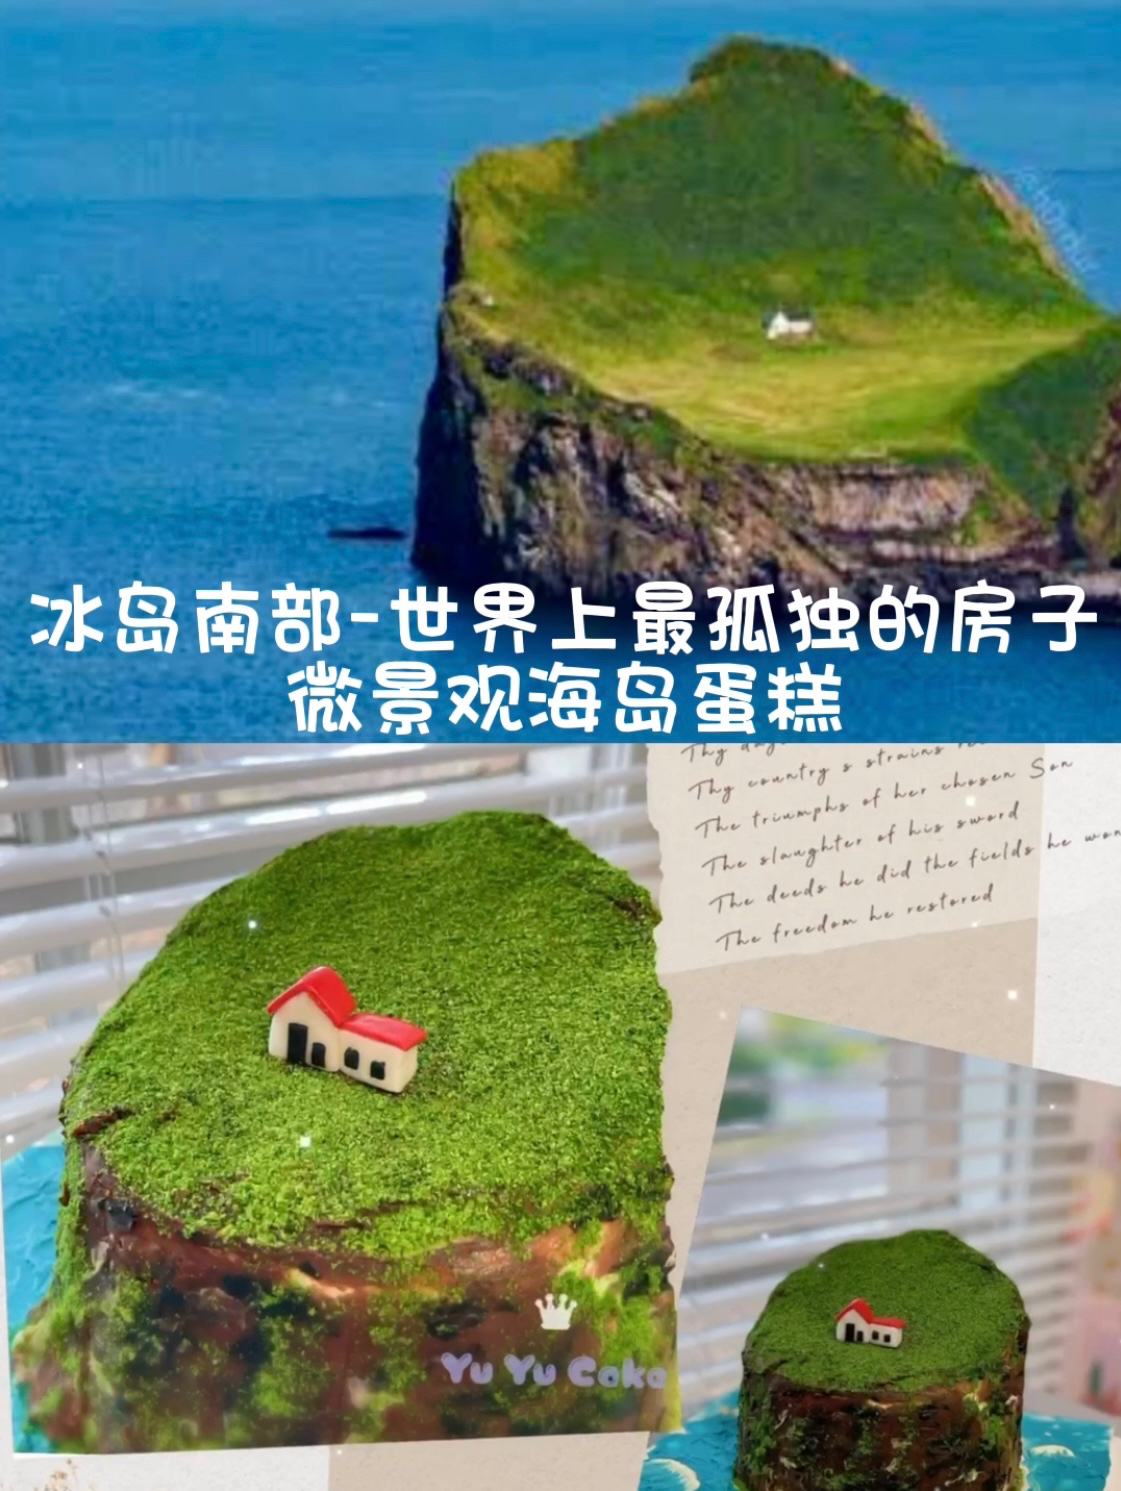 微景观海岛蛋糕 全世界最孤独的房子的做法